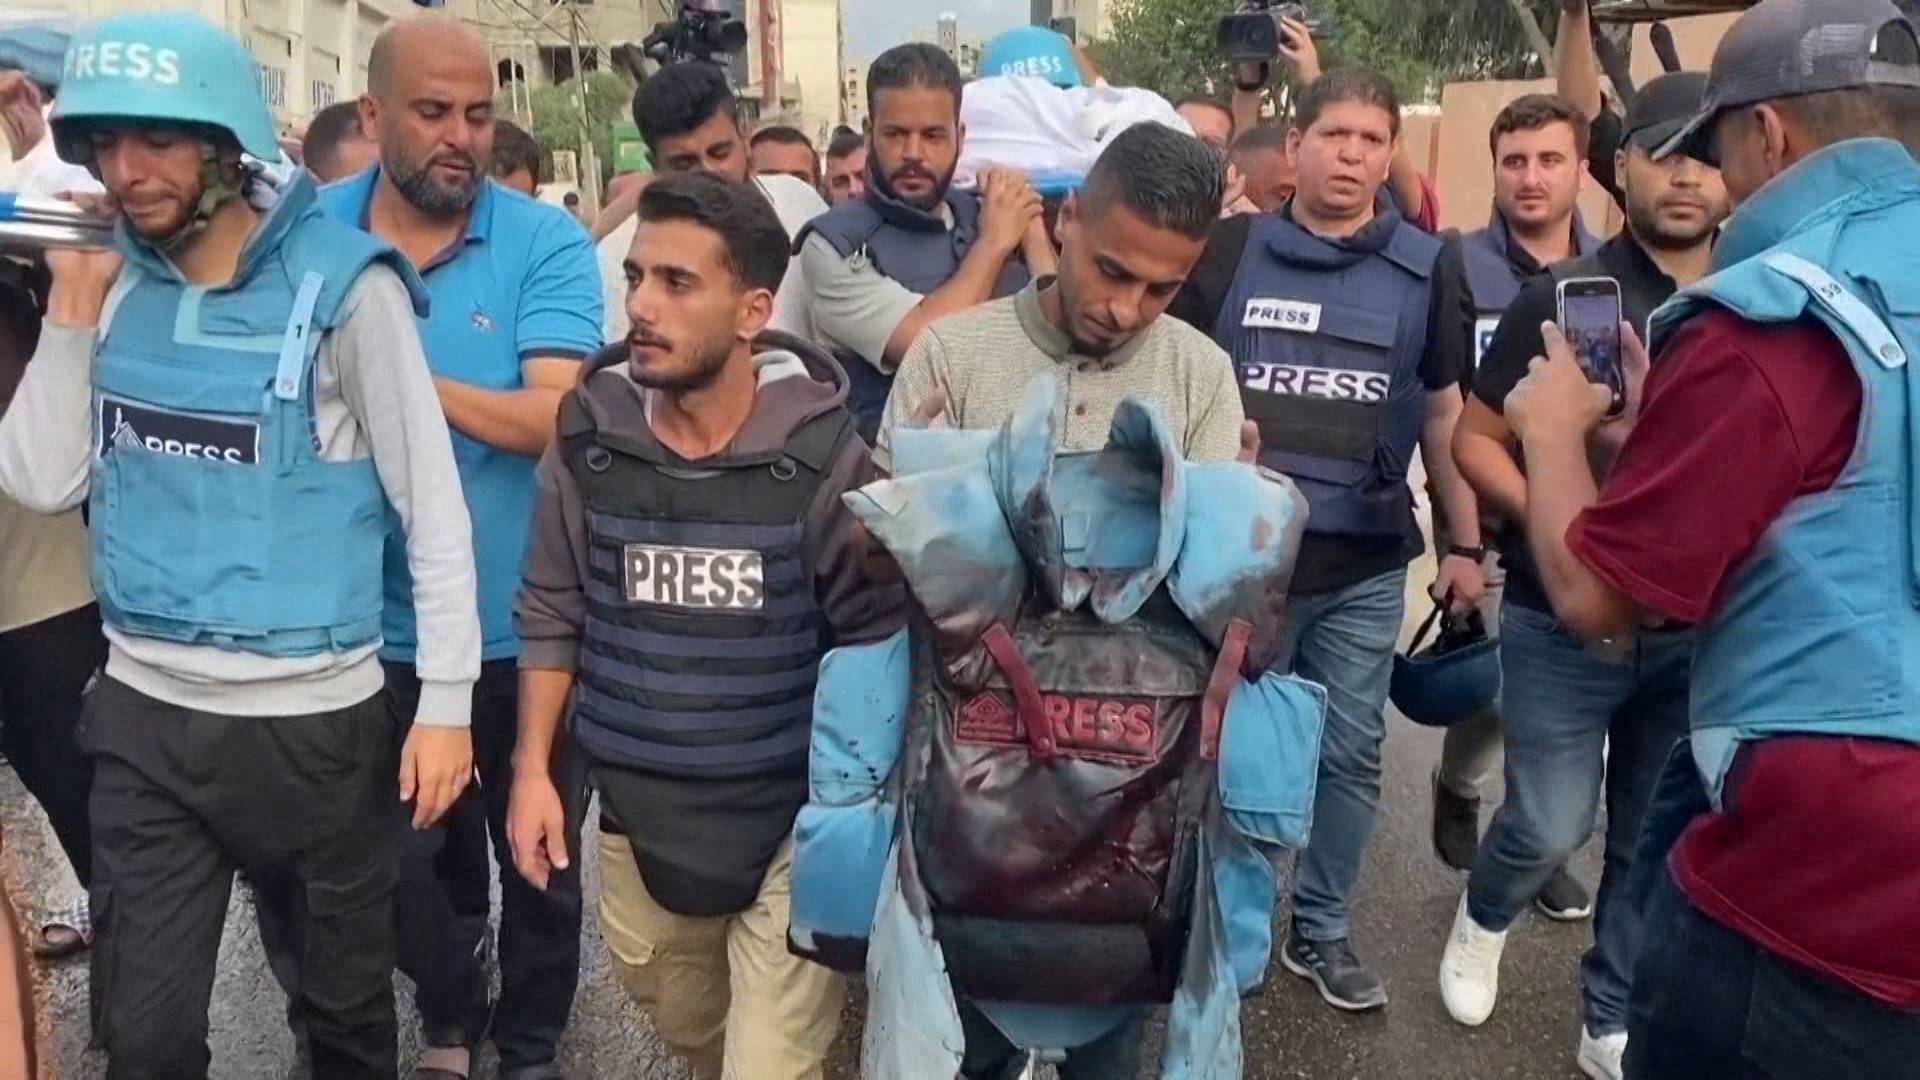 Au moins 12 journalistes, pour la plupart des Palestiniens à Gaza, tués au cours des 10 derniers jours